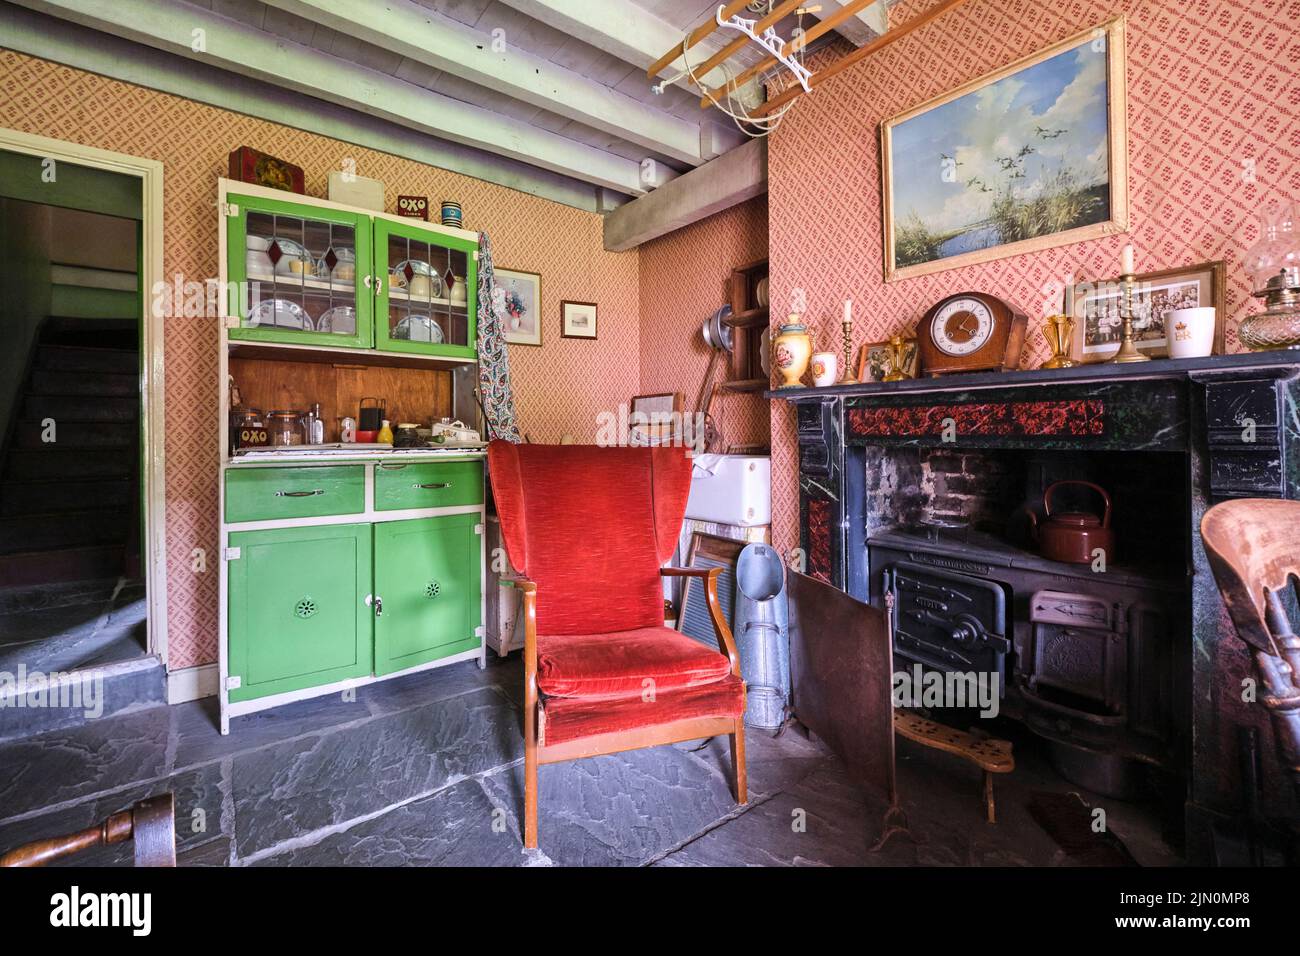 La salle de séjour avec cuisinière en fer forgé dans la cheminée, une alcôve avec évier de cuisine et une armoire à vaisselle verte. Dans une récréation d'un typique, gen Banque D'Images